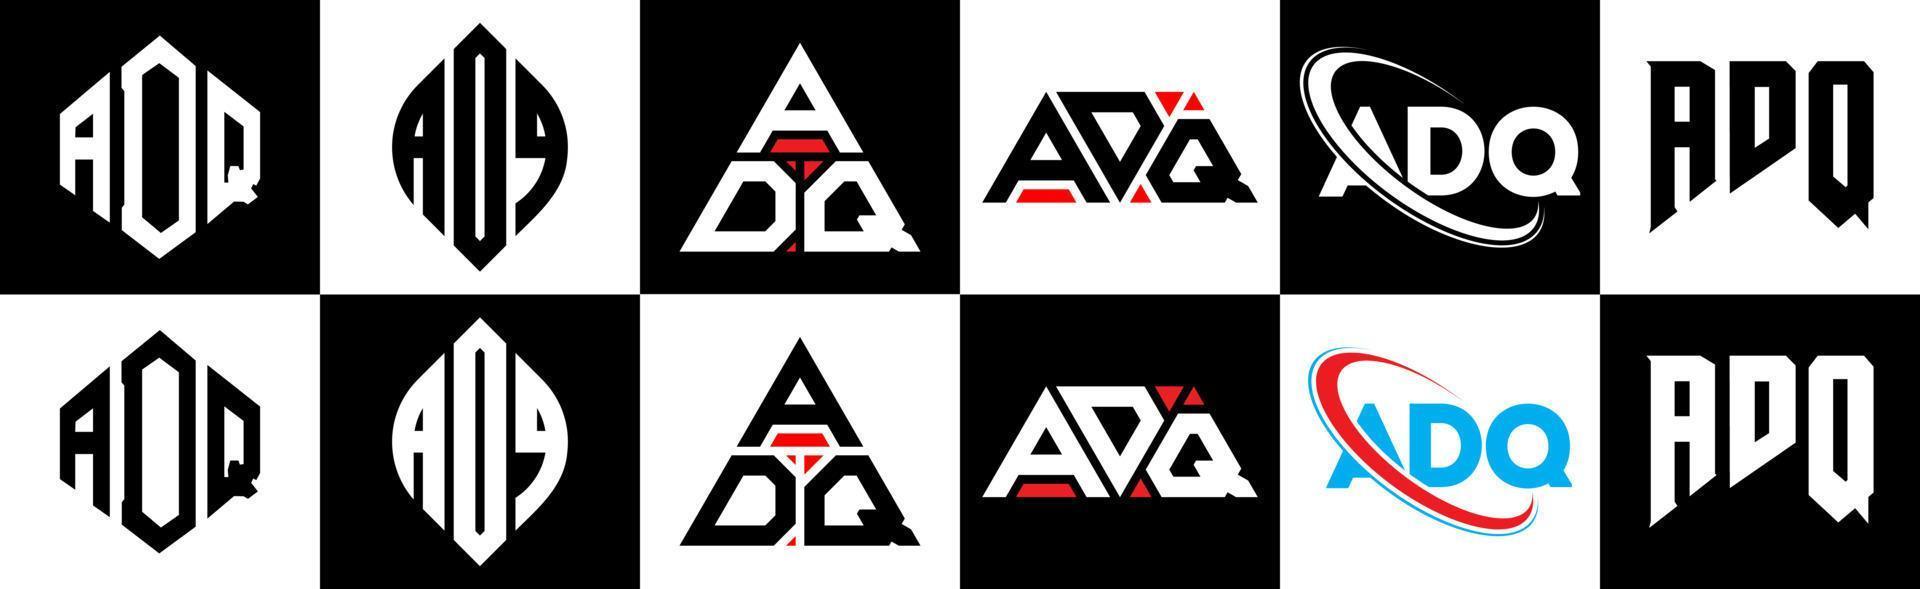 création de logo de lettre adq en six styles. adq polygone, cercle, triangle, hexagone, style plat et simple avec logo de lettre de variation de couleur noir et blanc dans un plan de travail. logo adq minimaliste et classique vecteur